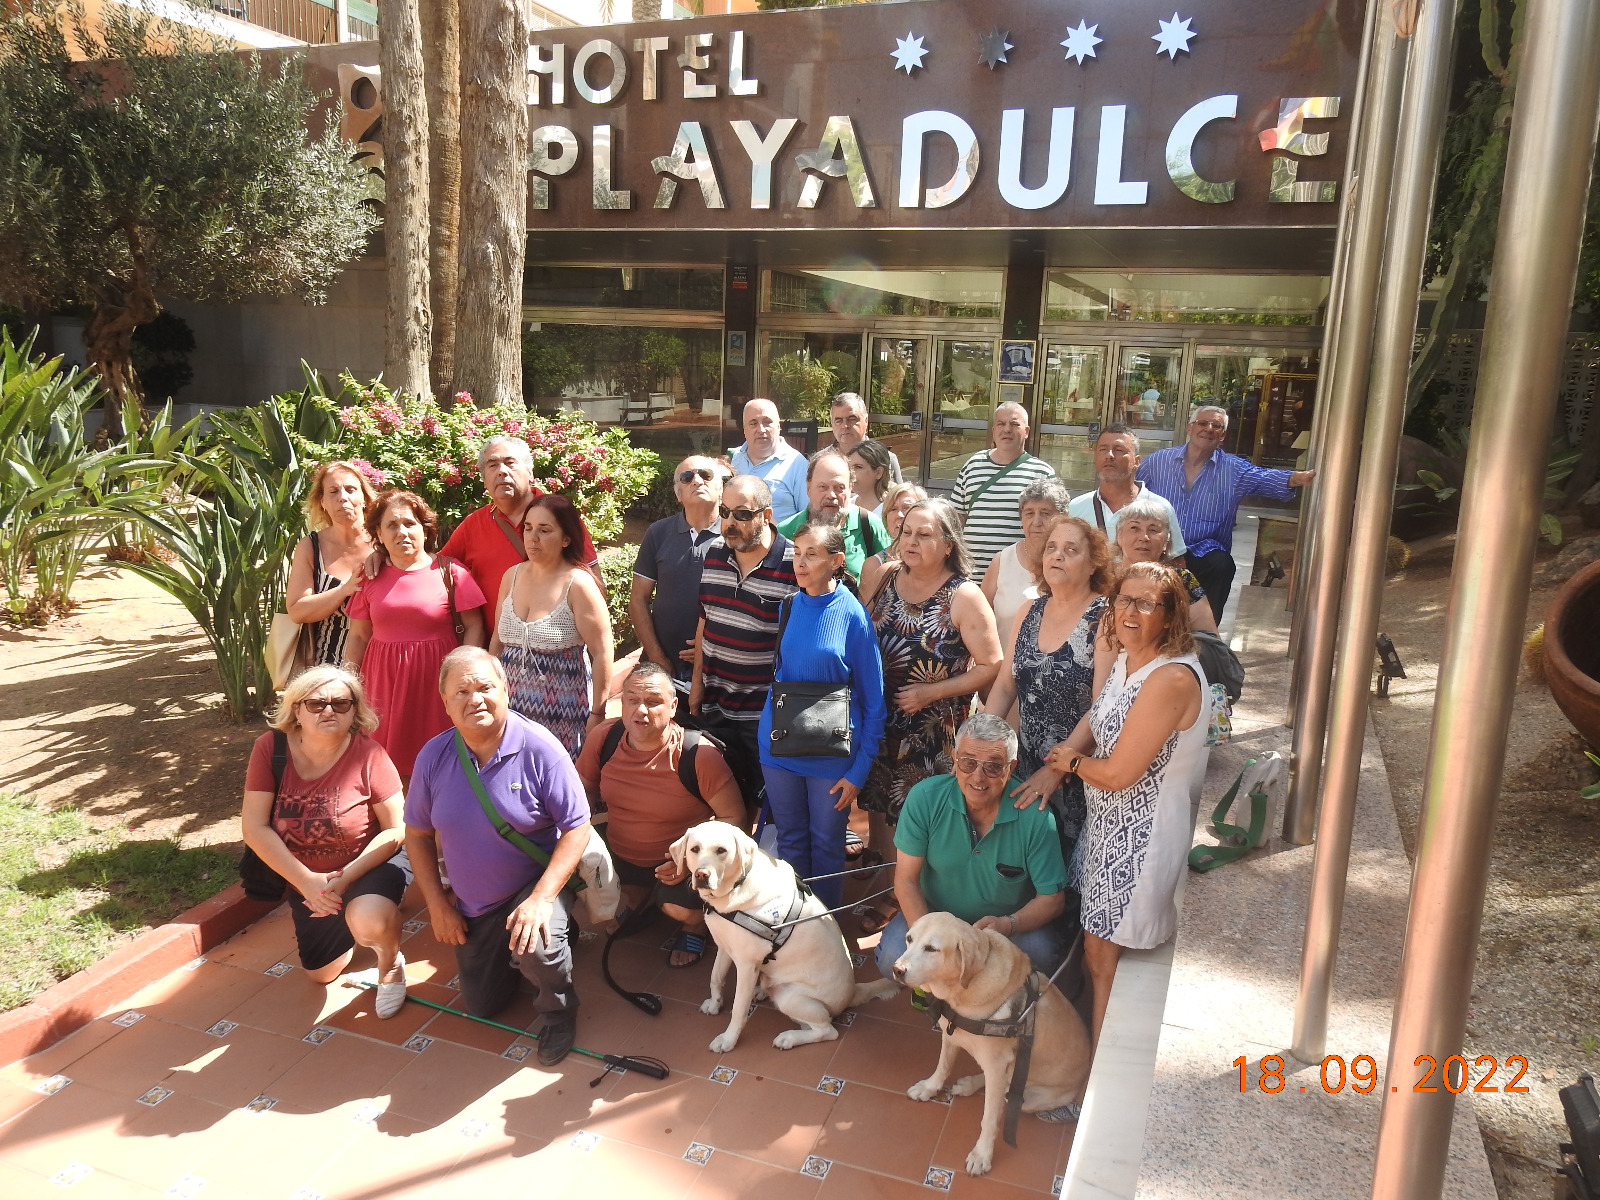 Grupo de participantes em frente ao Hotel Playadulce onde ficaram alojados